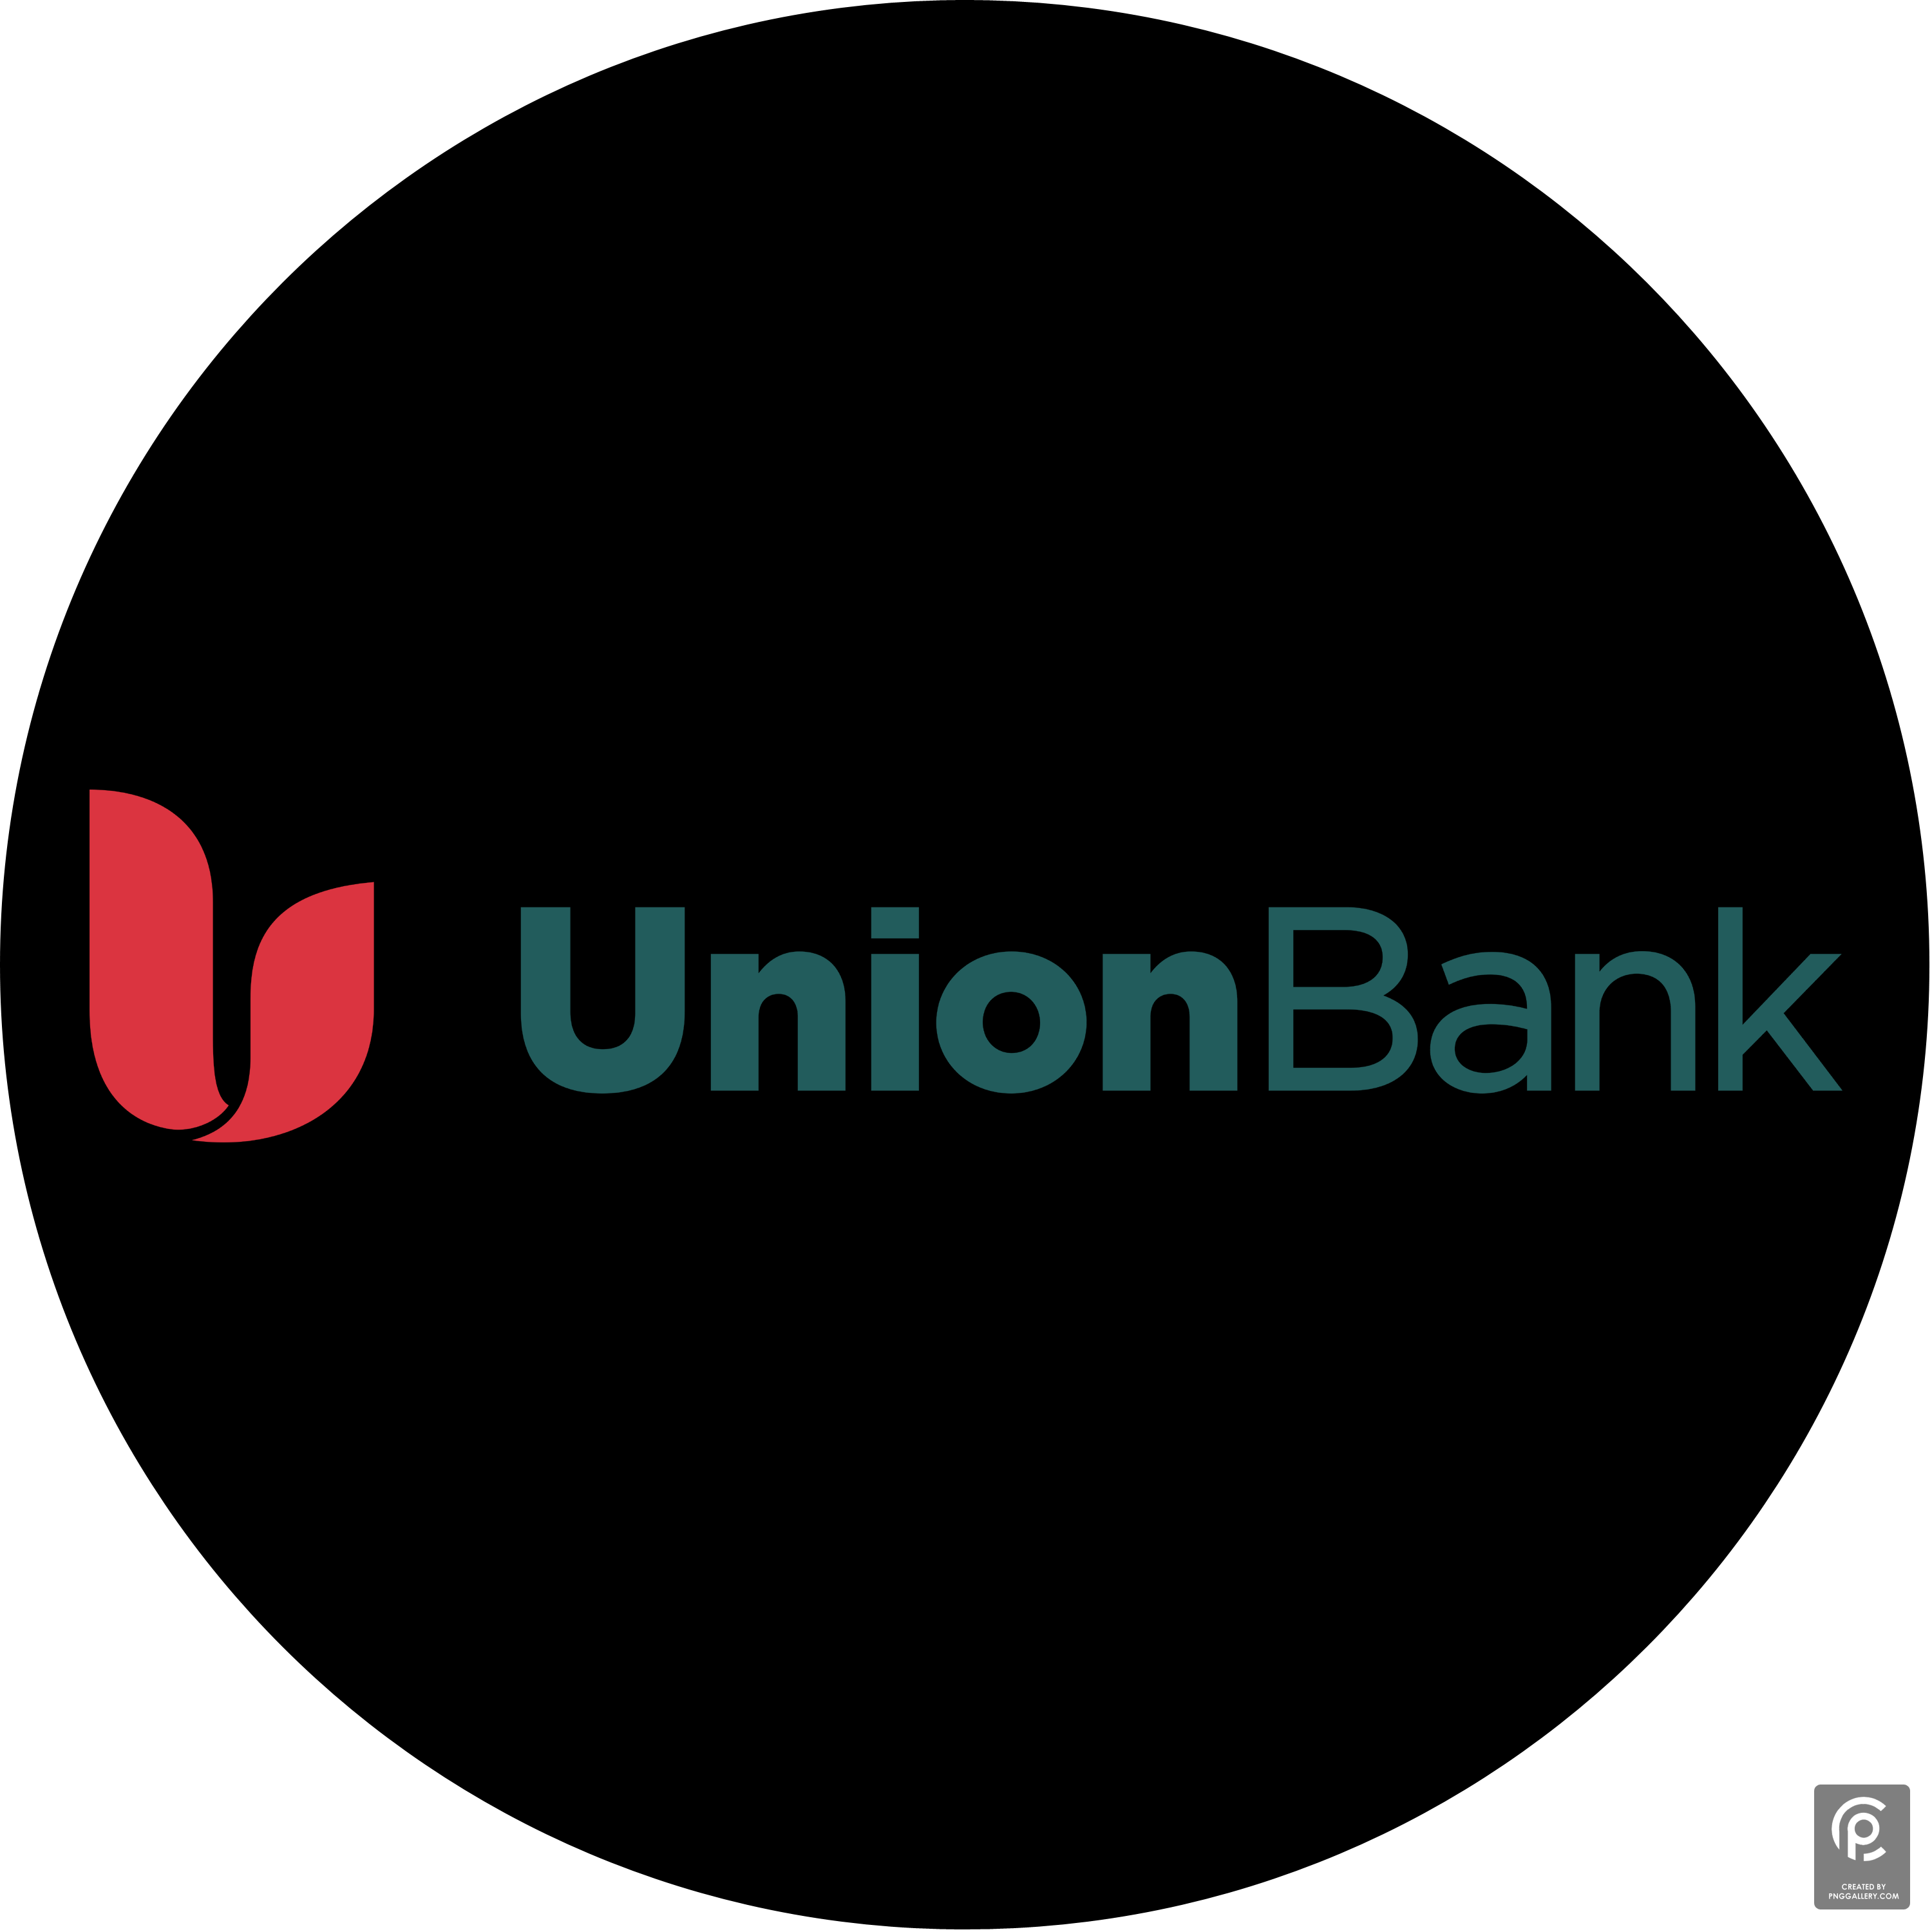 Union Bank 2017 Logo Transparent Clipart